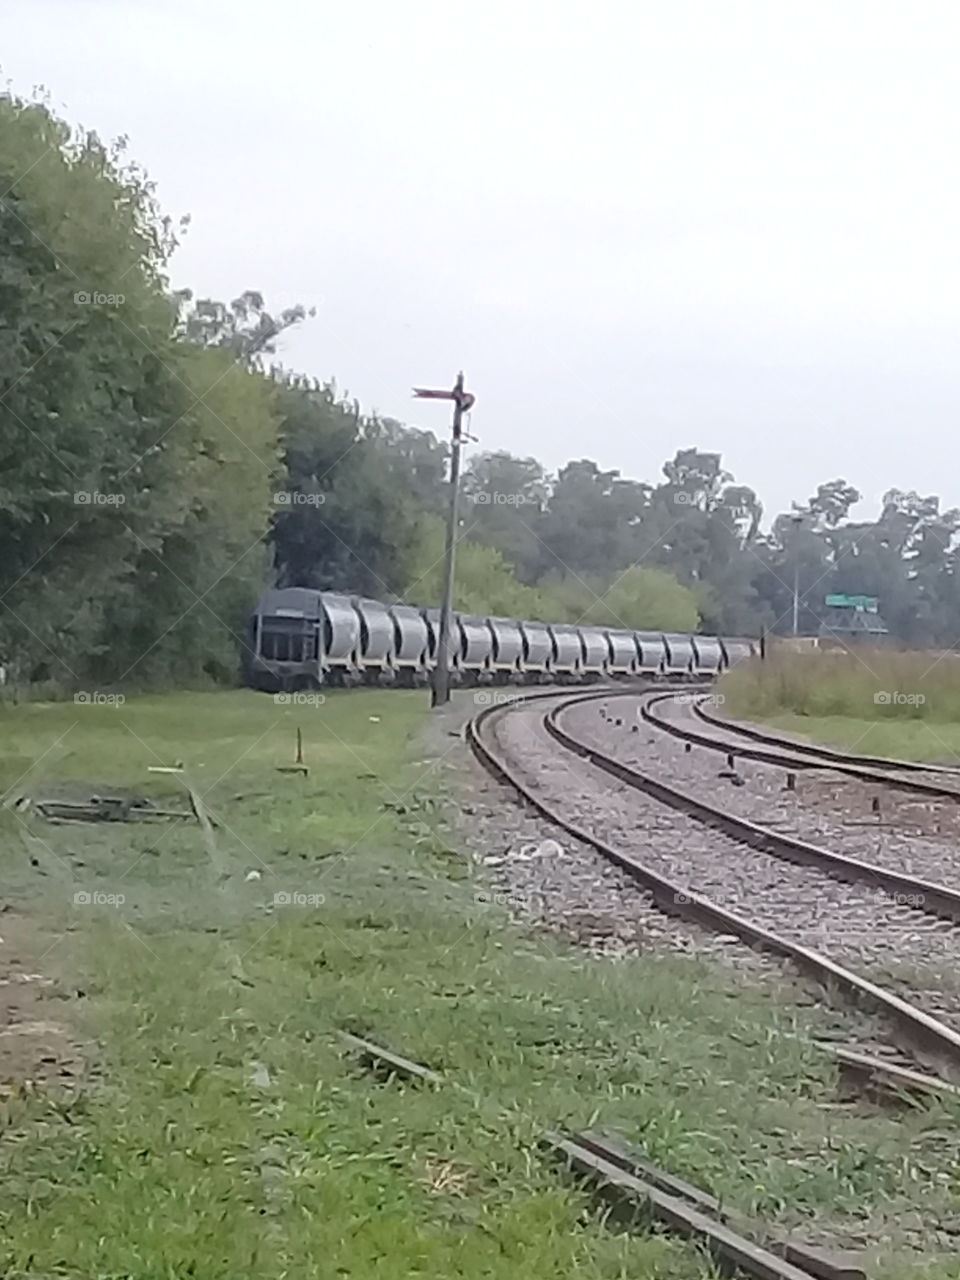 vagones cisterna de un tren de carga en desuso ubicados sobre la vía muerta de un ferrocarril rural.